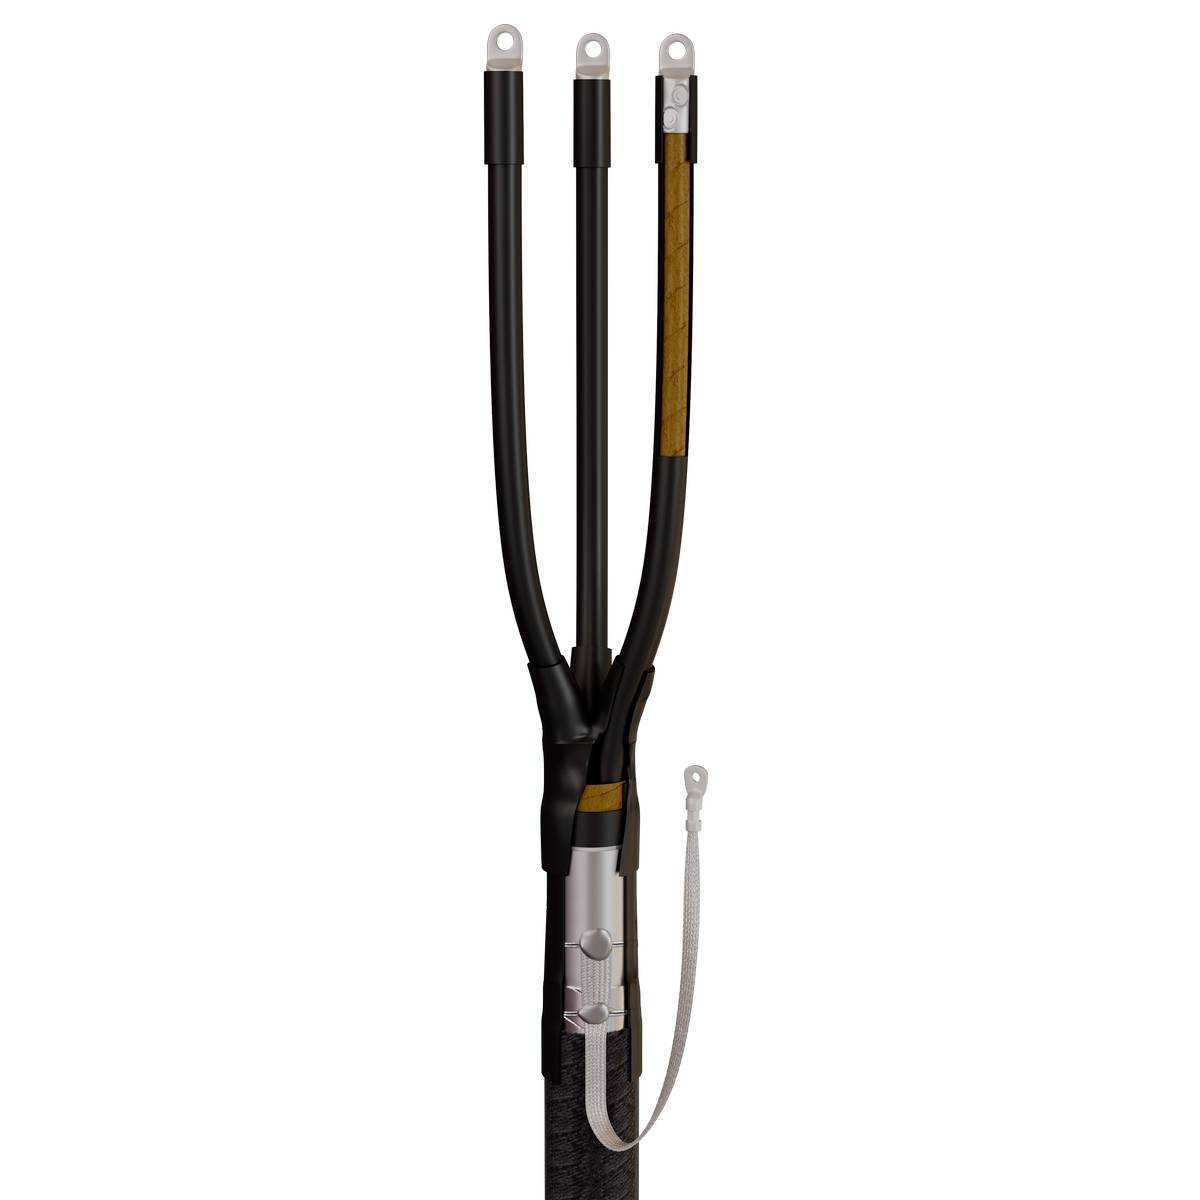 Муфта кабельная концевая 3КВНТп-1-70/120 (Б) (пайка) для кабелей с бумажной или пластмассовой изоляцией до 1кВ с болтовыми наконечниками